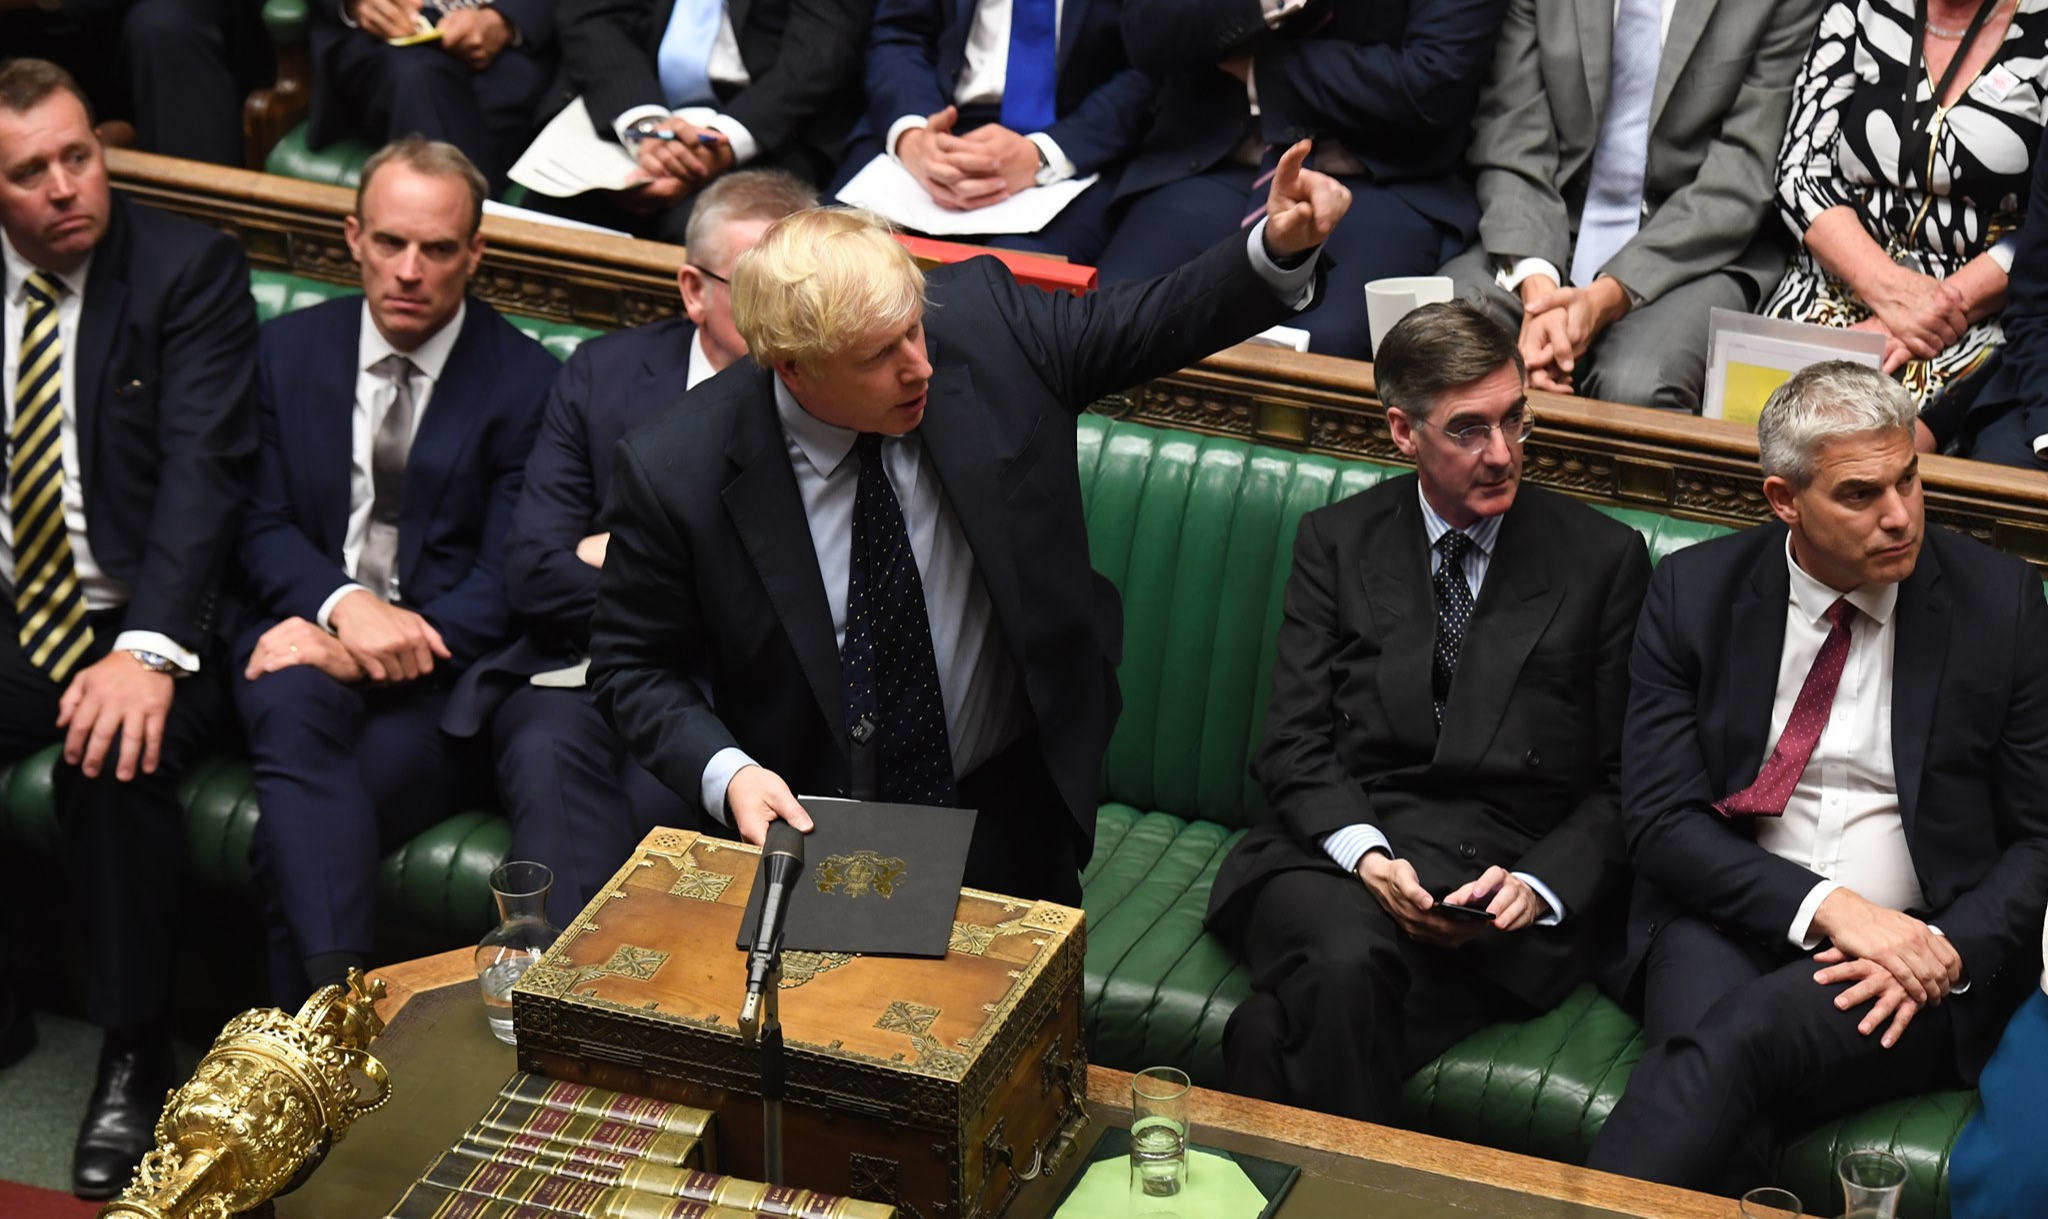 Proposta foi apresentada pelo governo após sofrer uma derrota mais cedo no Parlamento com a aprovação de uma emenda que impediu que Johnson consiga concluir um Brexit sem acordo